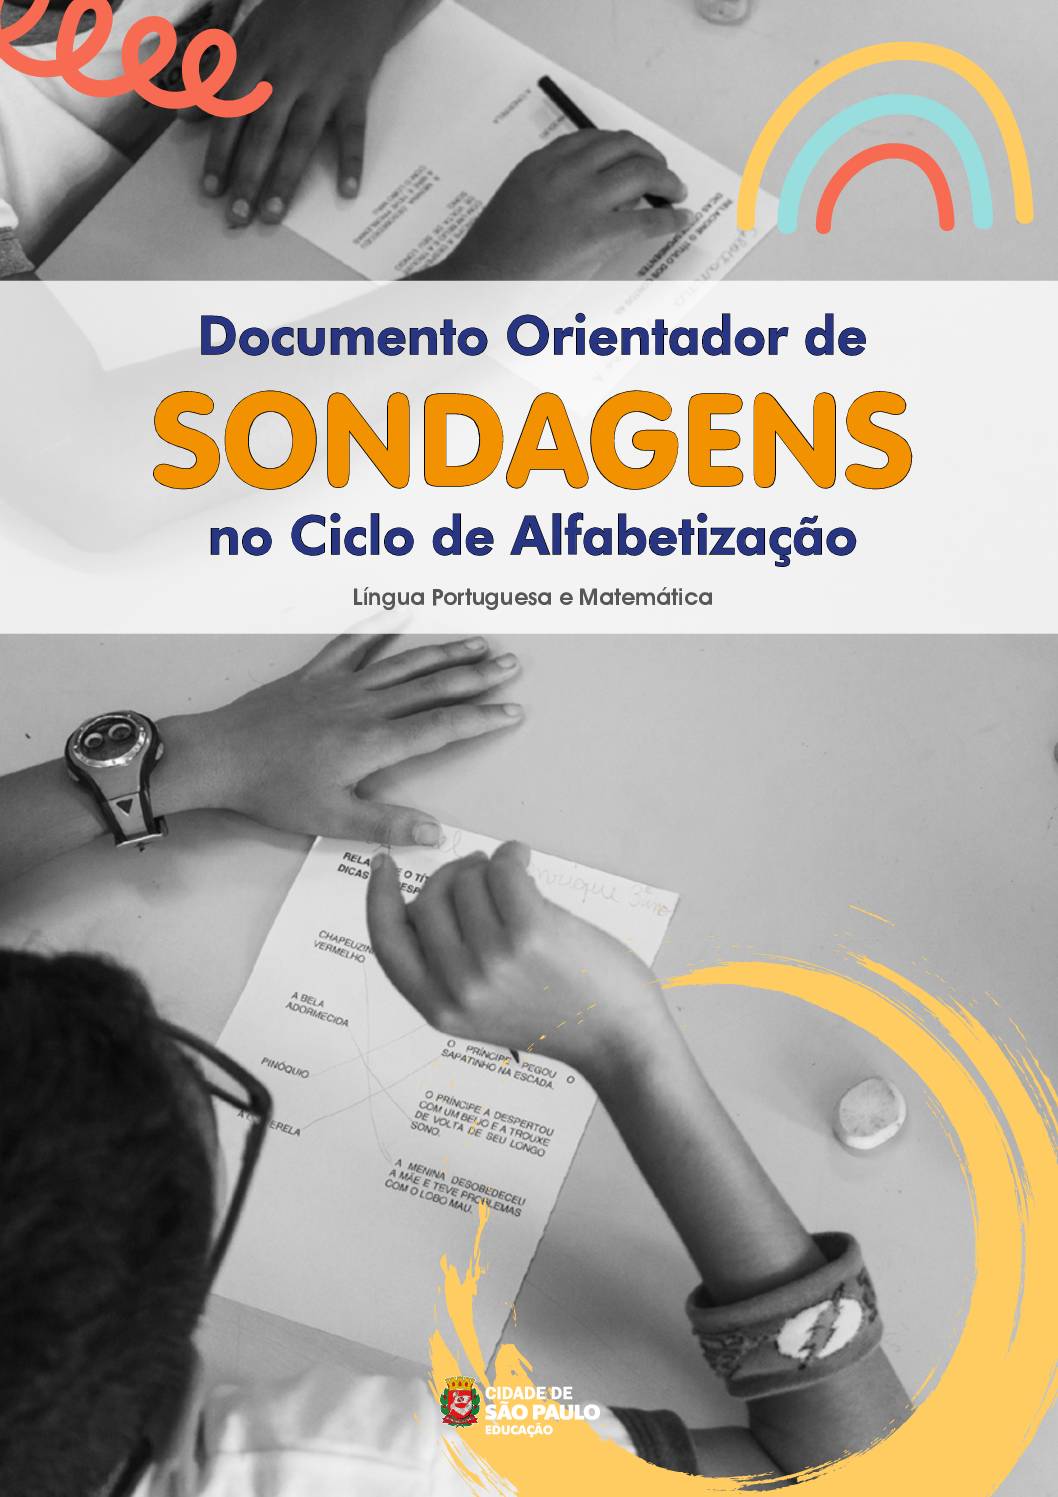 Este documento reúne orientações  a respeito das sondagens em Língua Portuguesa e Matemática no Ciclo de Alfabetização. Tem como objetivo orientar e fornecer subsídios para aplicação, análises e registros dos processos de aprendizagens dos estudantes.